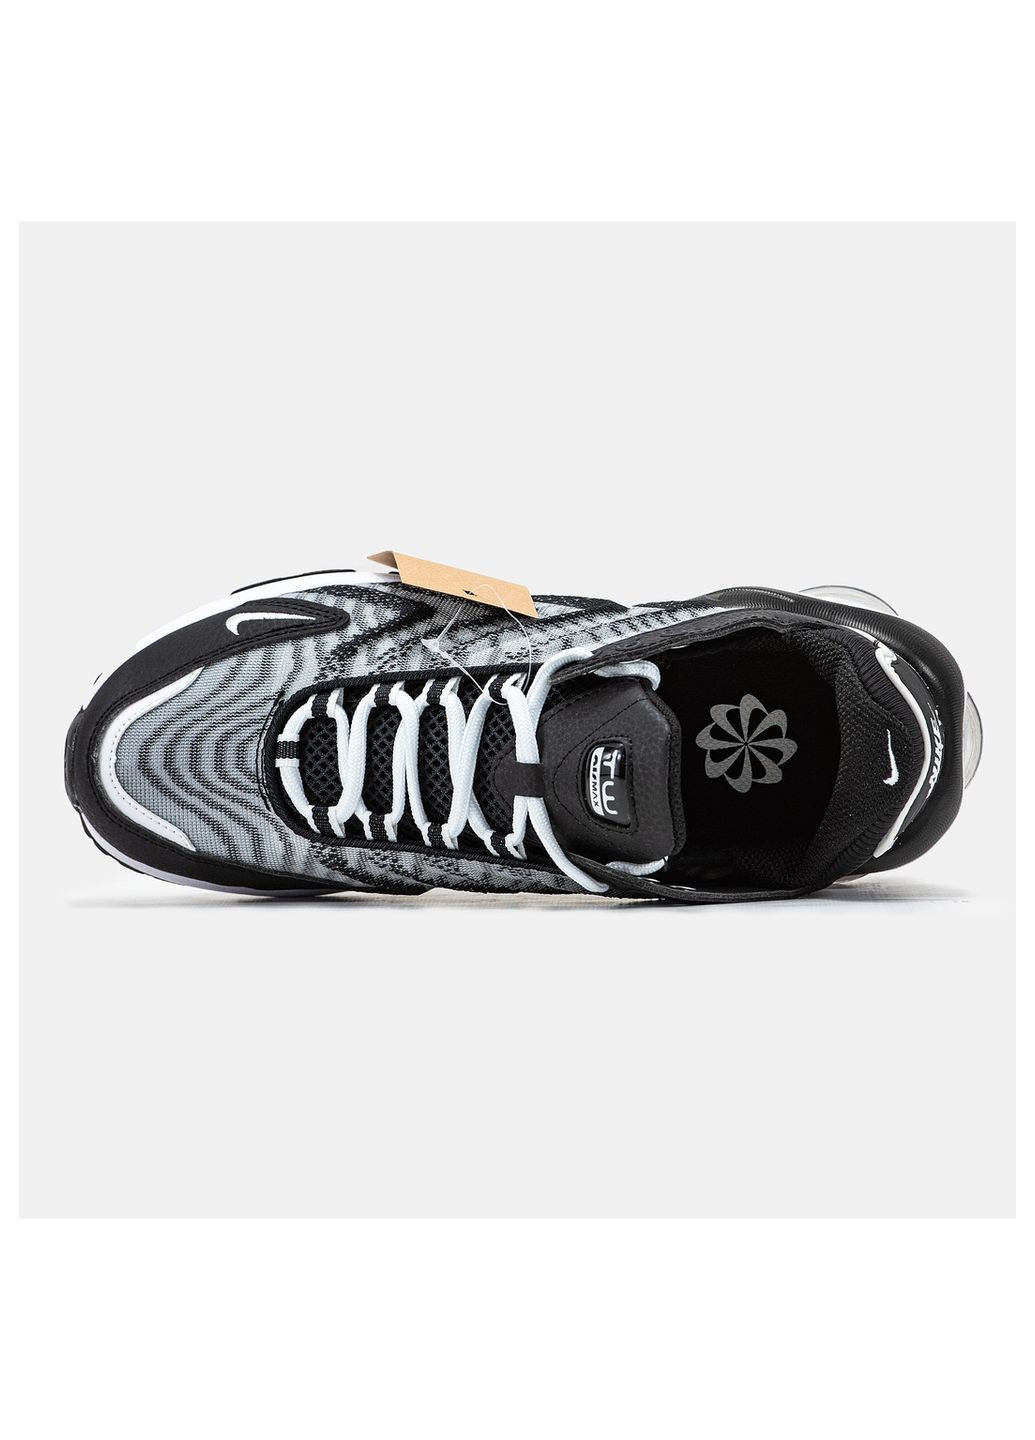 Цветные демисезонные кроссовки мужские Nike Air Max TW